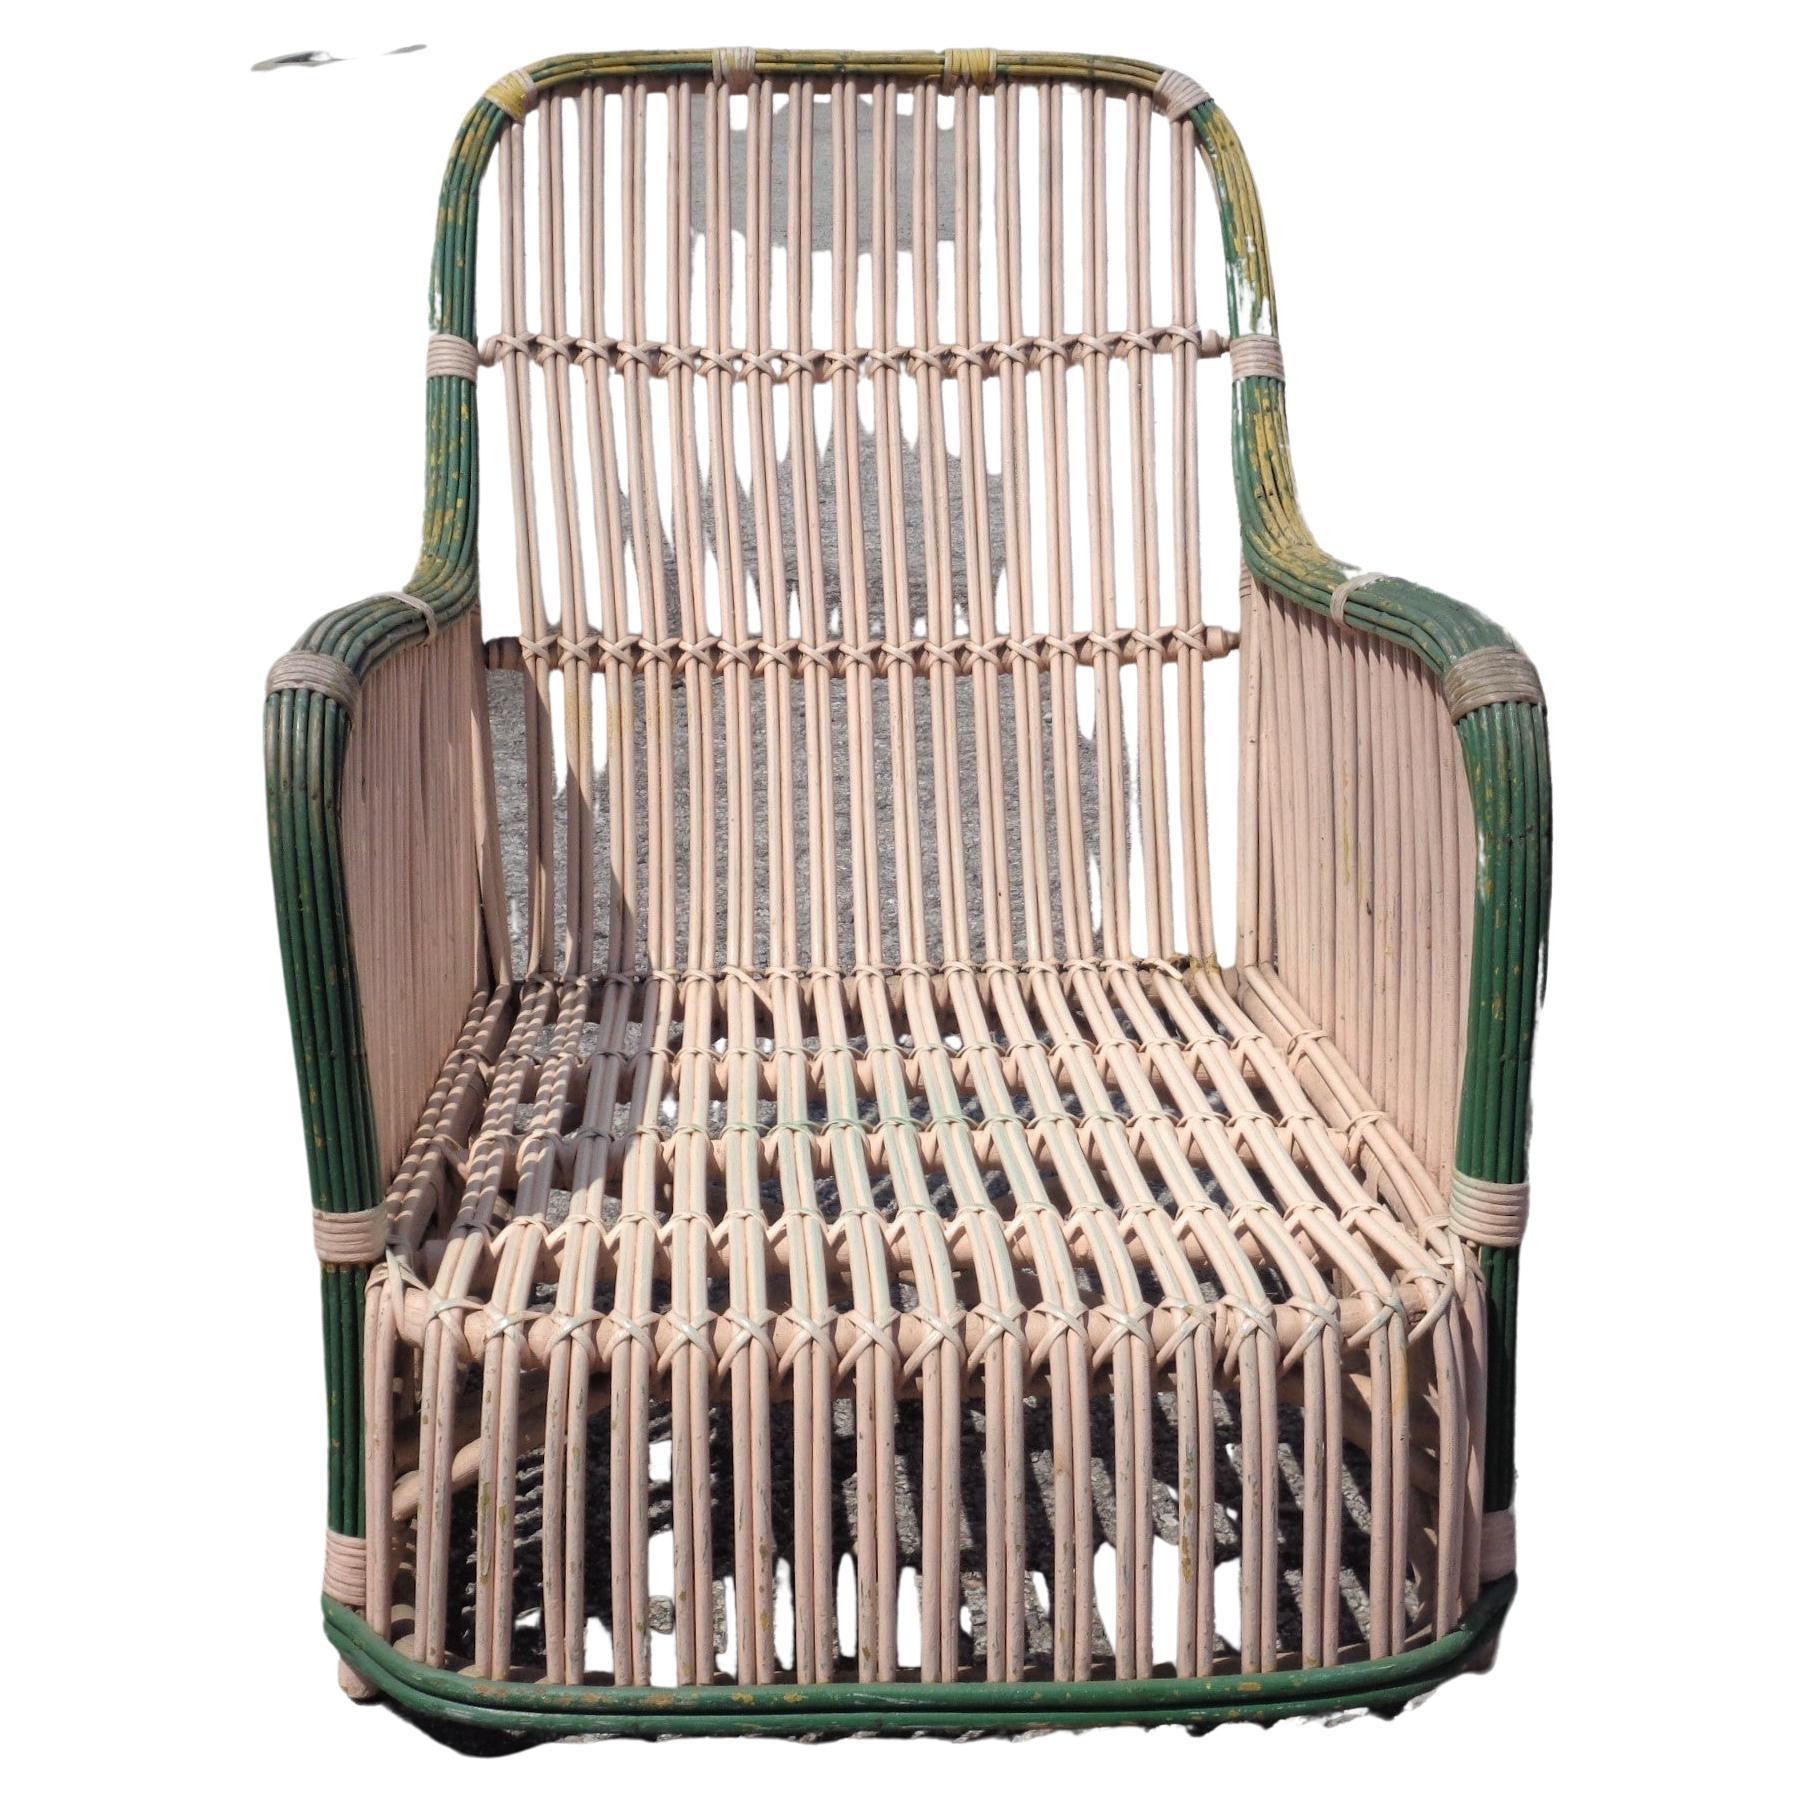  Amerikanischer Sessel aus geflochtenem Schilfrohr mit abgenutzter cremefarbener und grün lackierter Oberfläche. Um 1930. Wunderschön. Schauen Sie sich alle Bilder an und lesen Sie den Zustandsbericht im Kommentarbereich **** HAND LIEFERUNG KANN VON